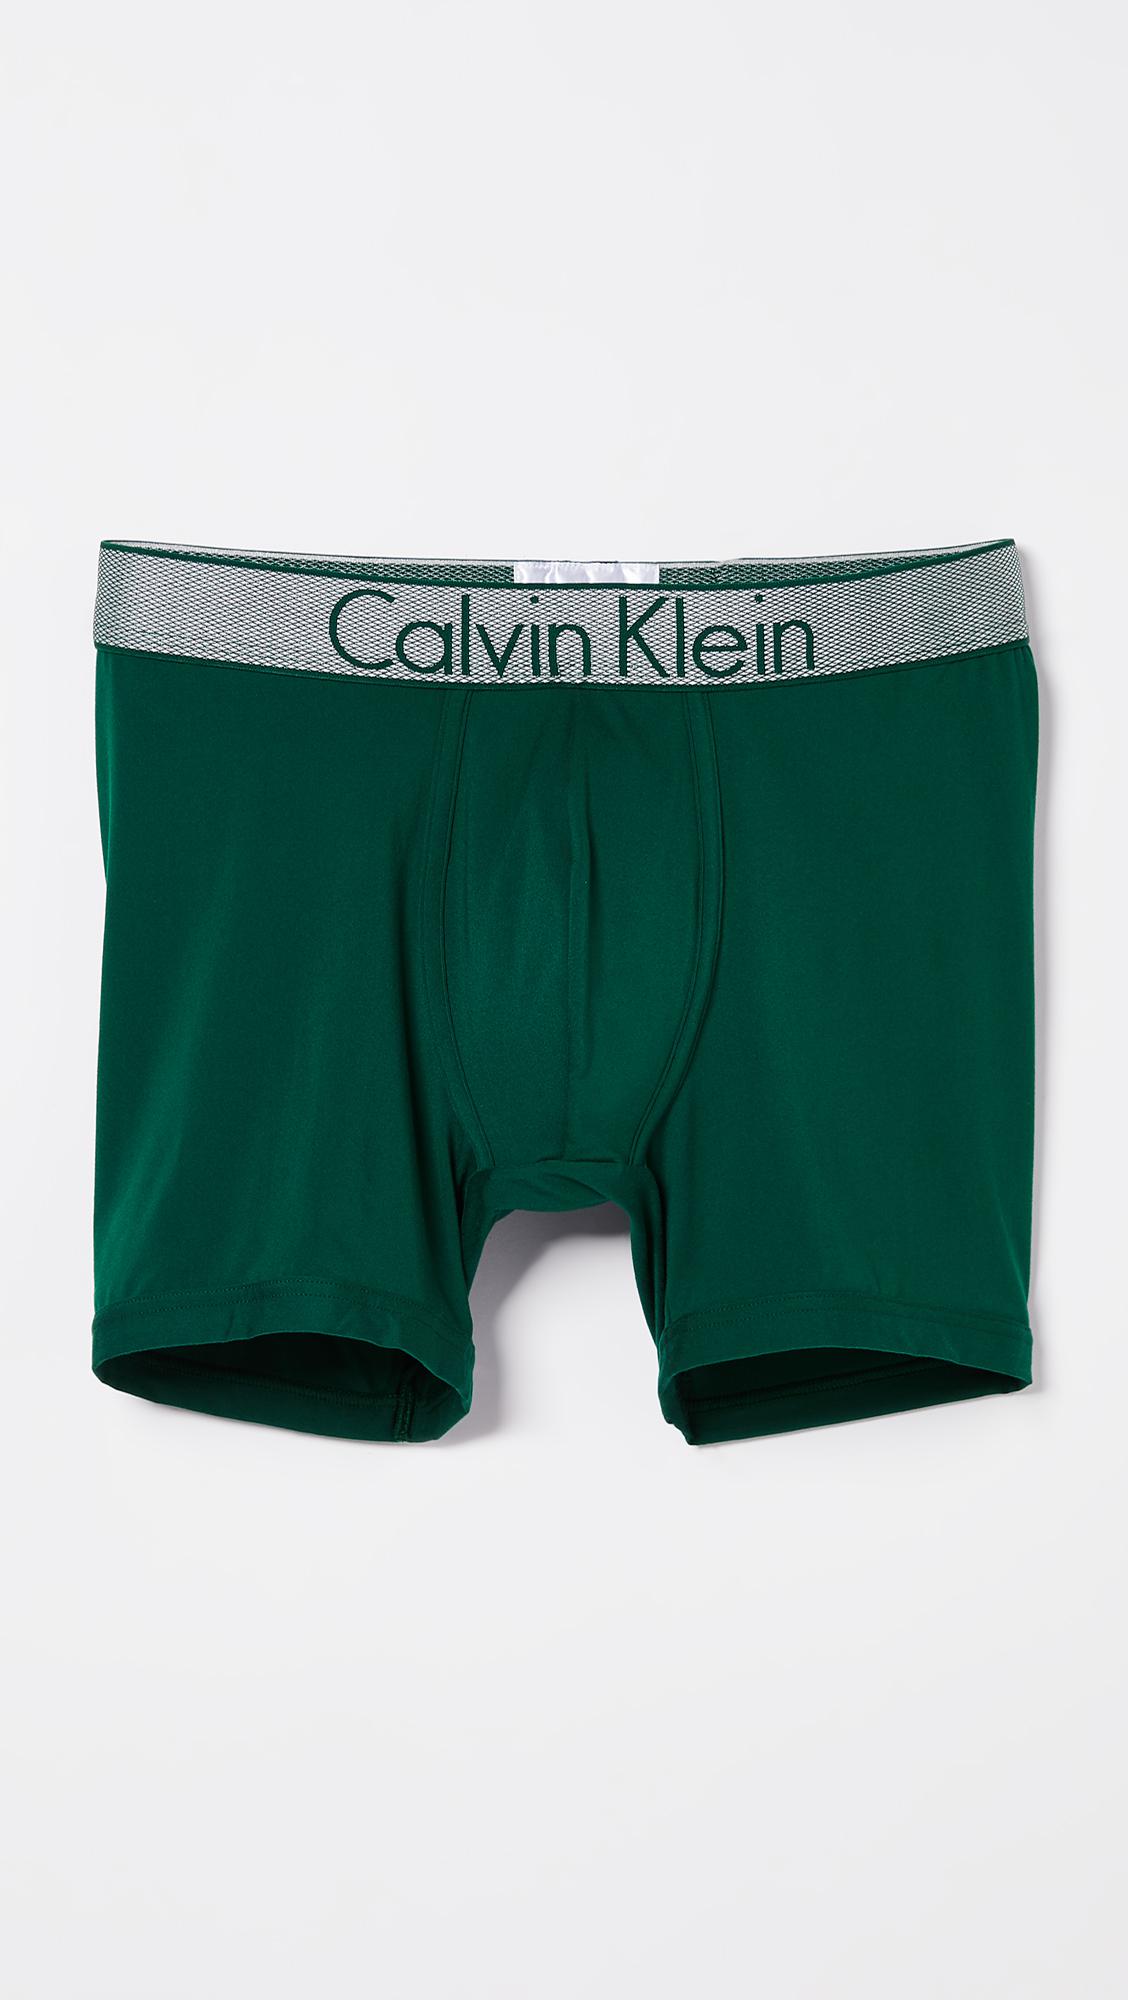 calvin klein boxers green